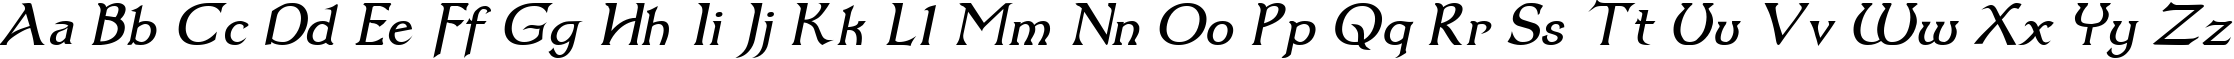 Пример написания английского алфавита шрифтом Dumbledor 3 Italic